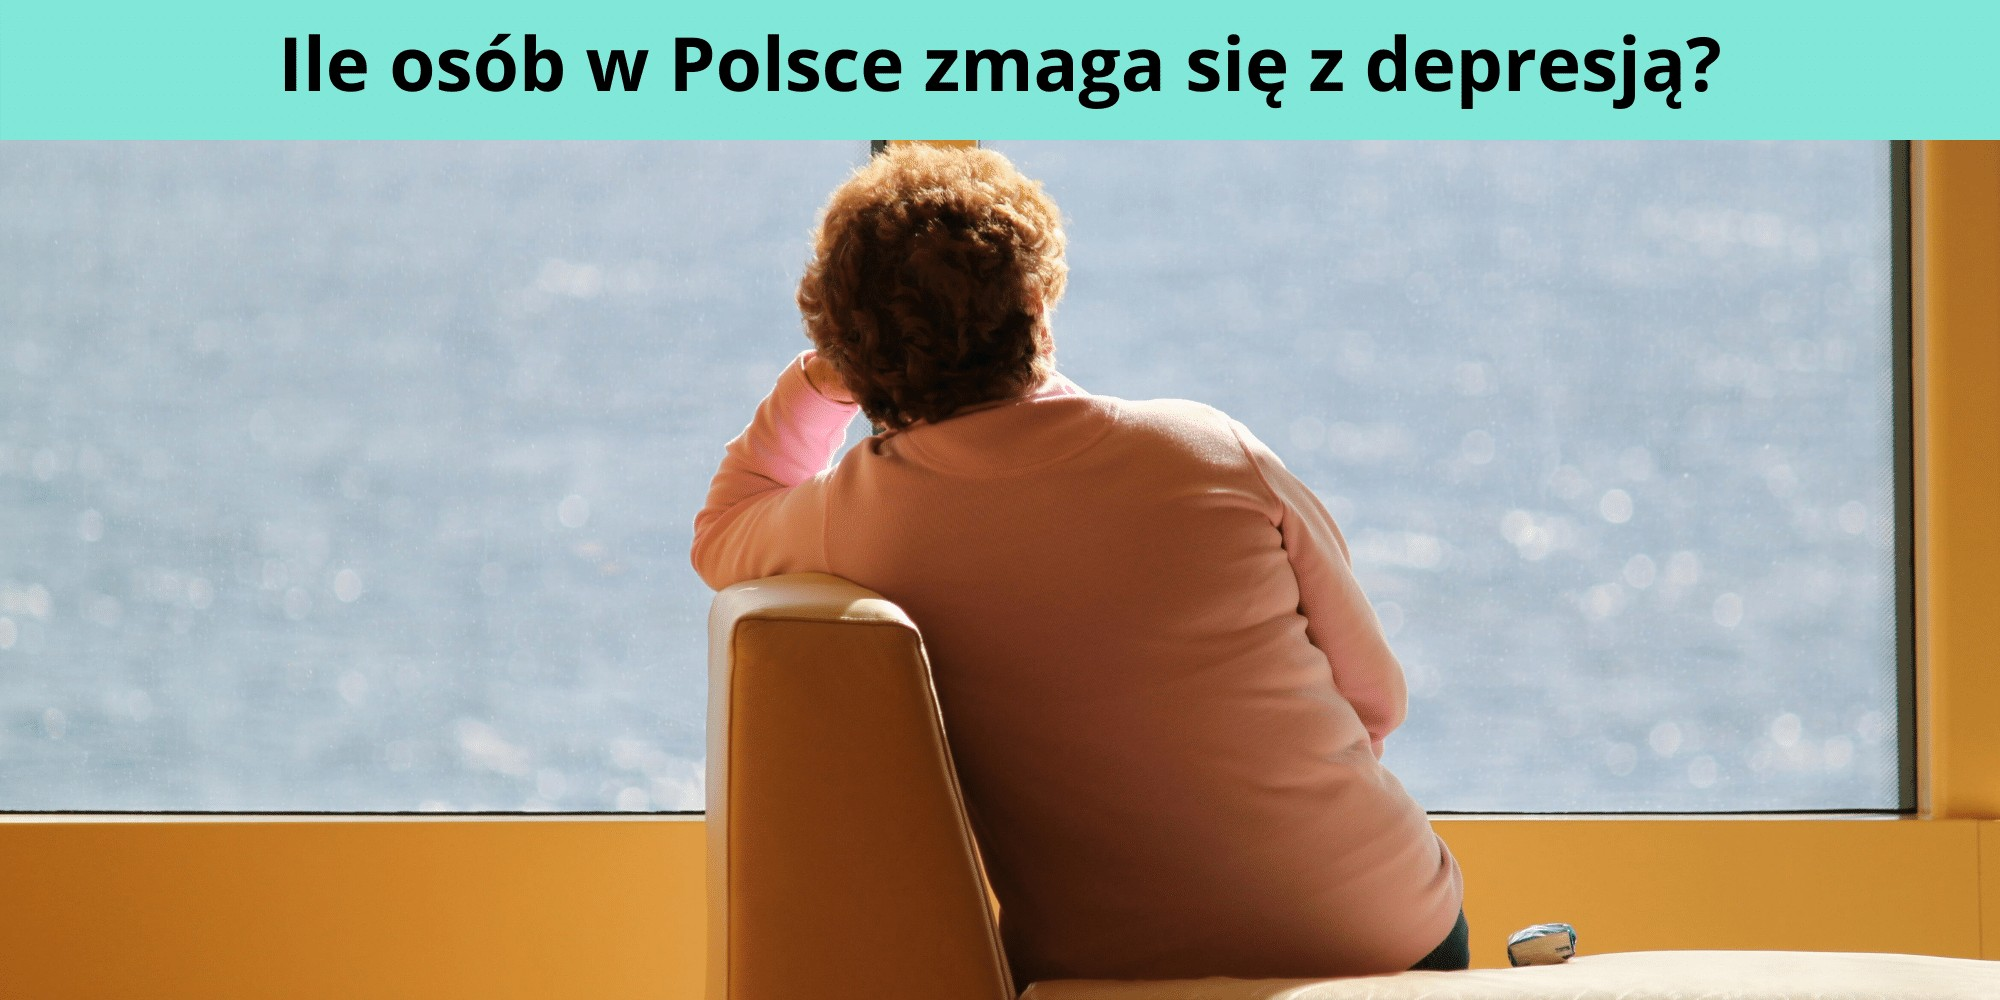 Ile osób w Polsce zmaga się z depresją?